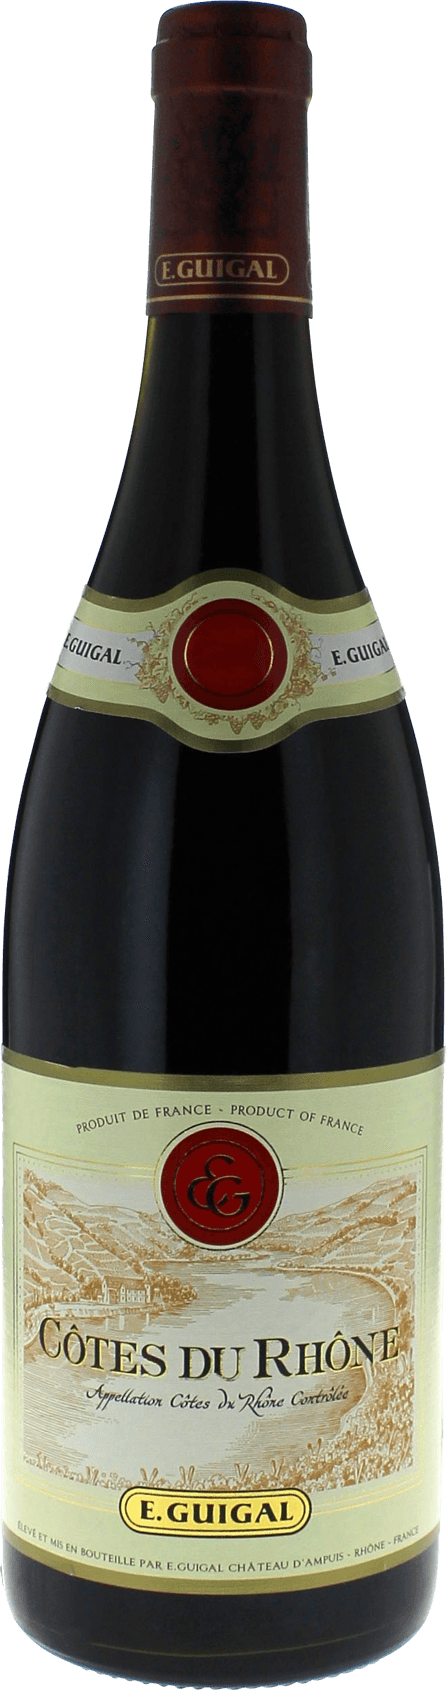 Vente Côtes du rhone rouge guigal 2018 (Côtes du Rhone, par 6, vin